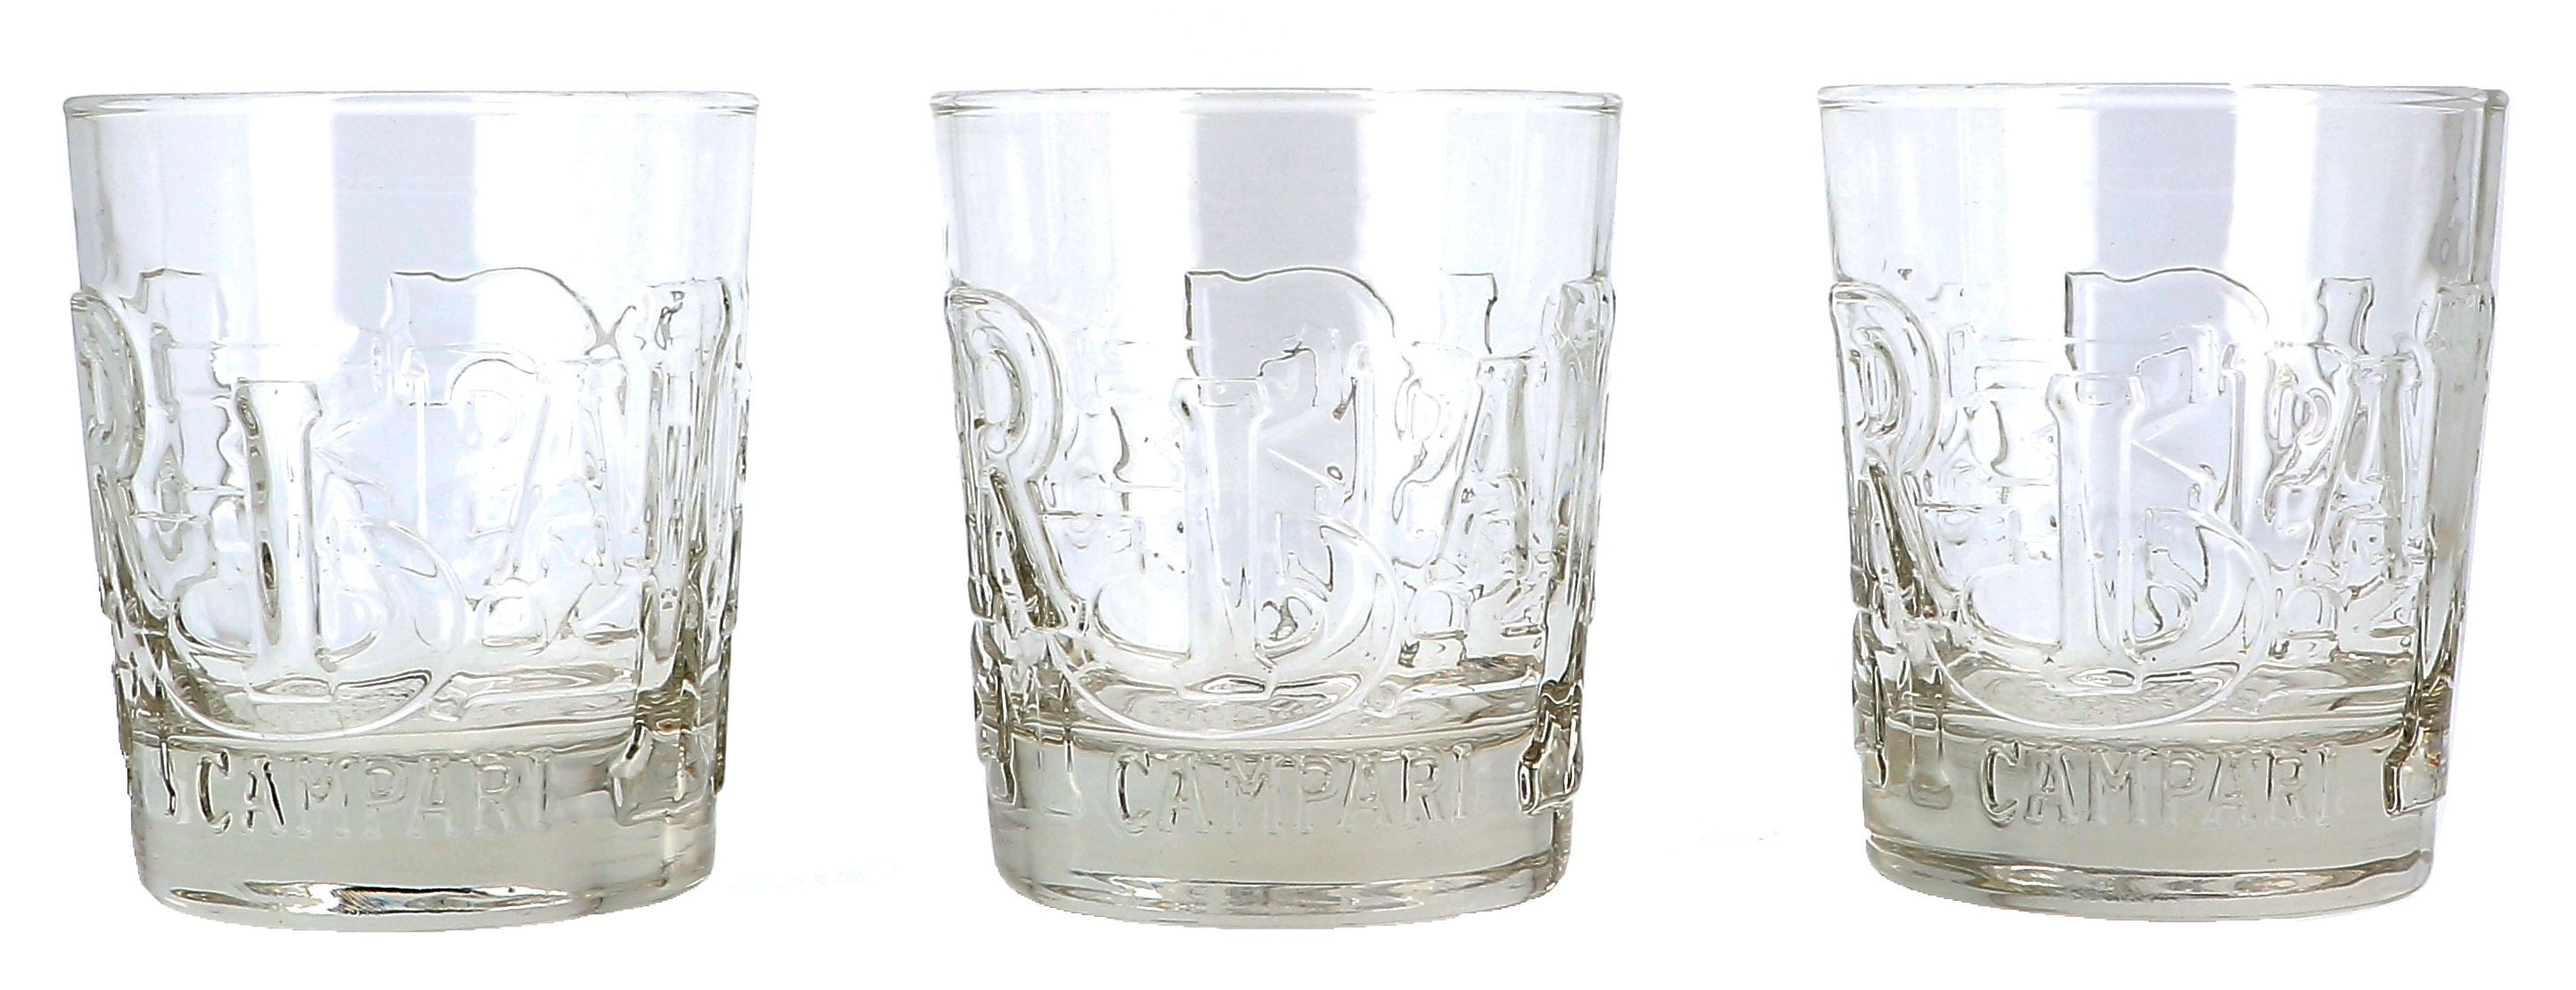 Glas Aperol Spritz 51cl 6x1st